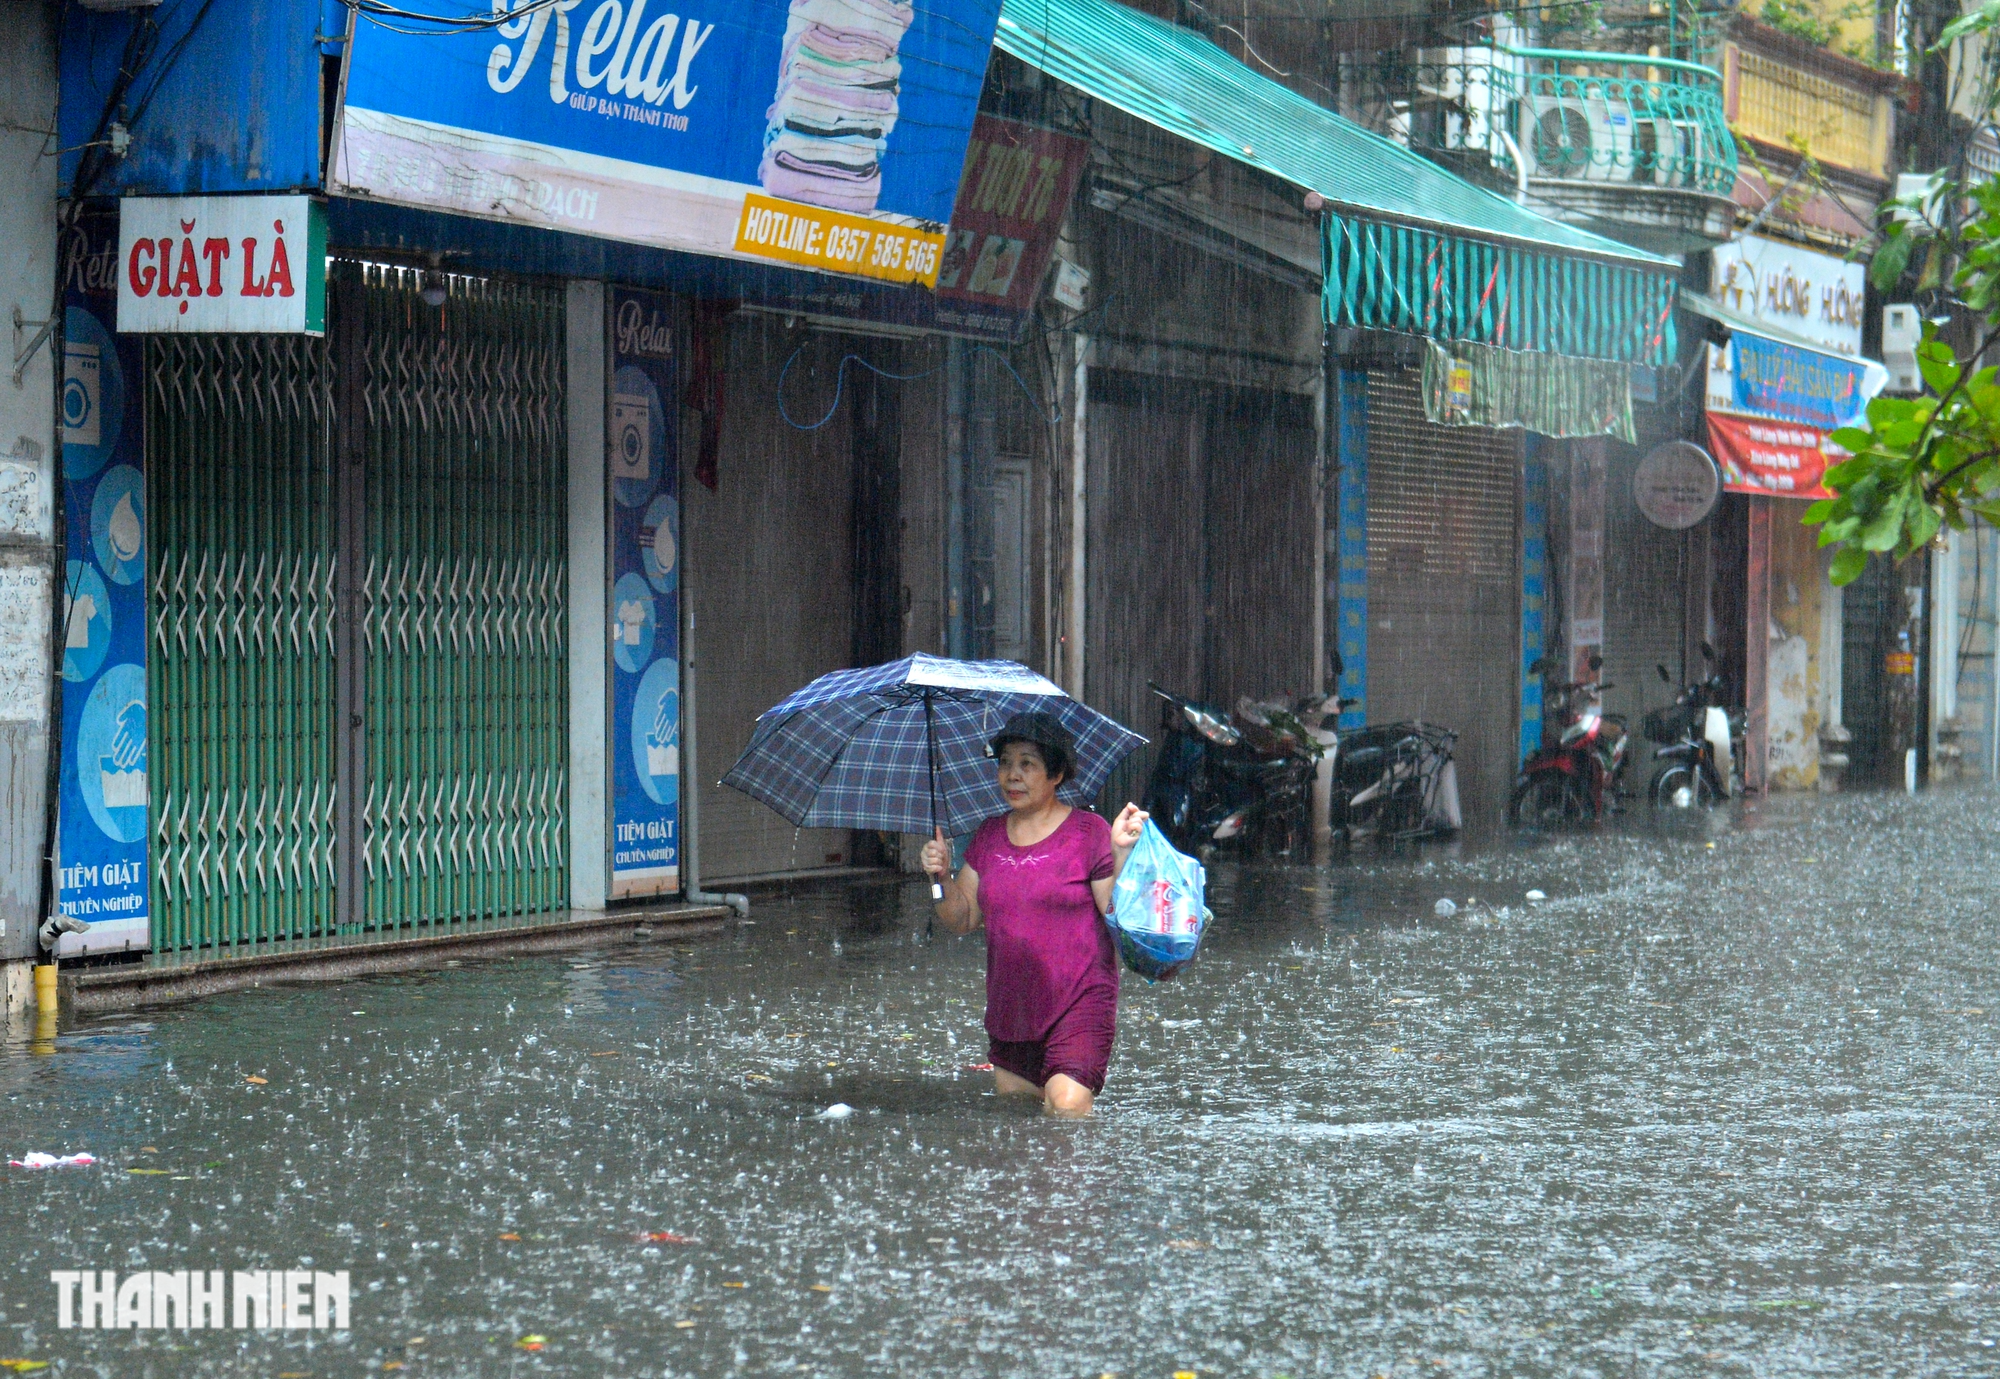 Hà Nội 'ngập như sông' sau mưa lớn, người dân khổ sở nhích từng mét trên đường - Ảnh 8.